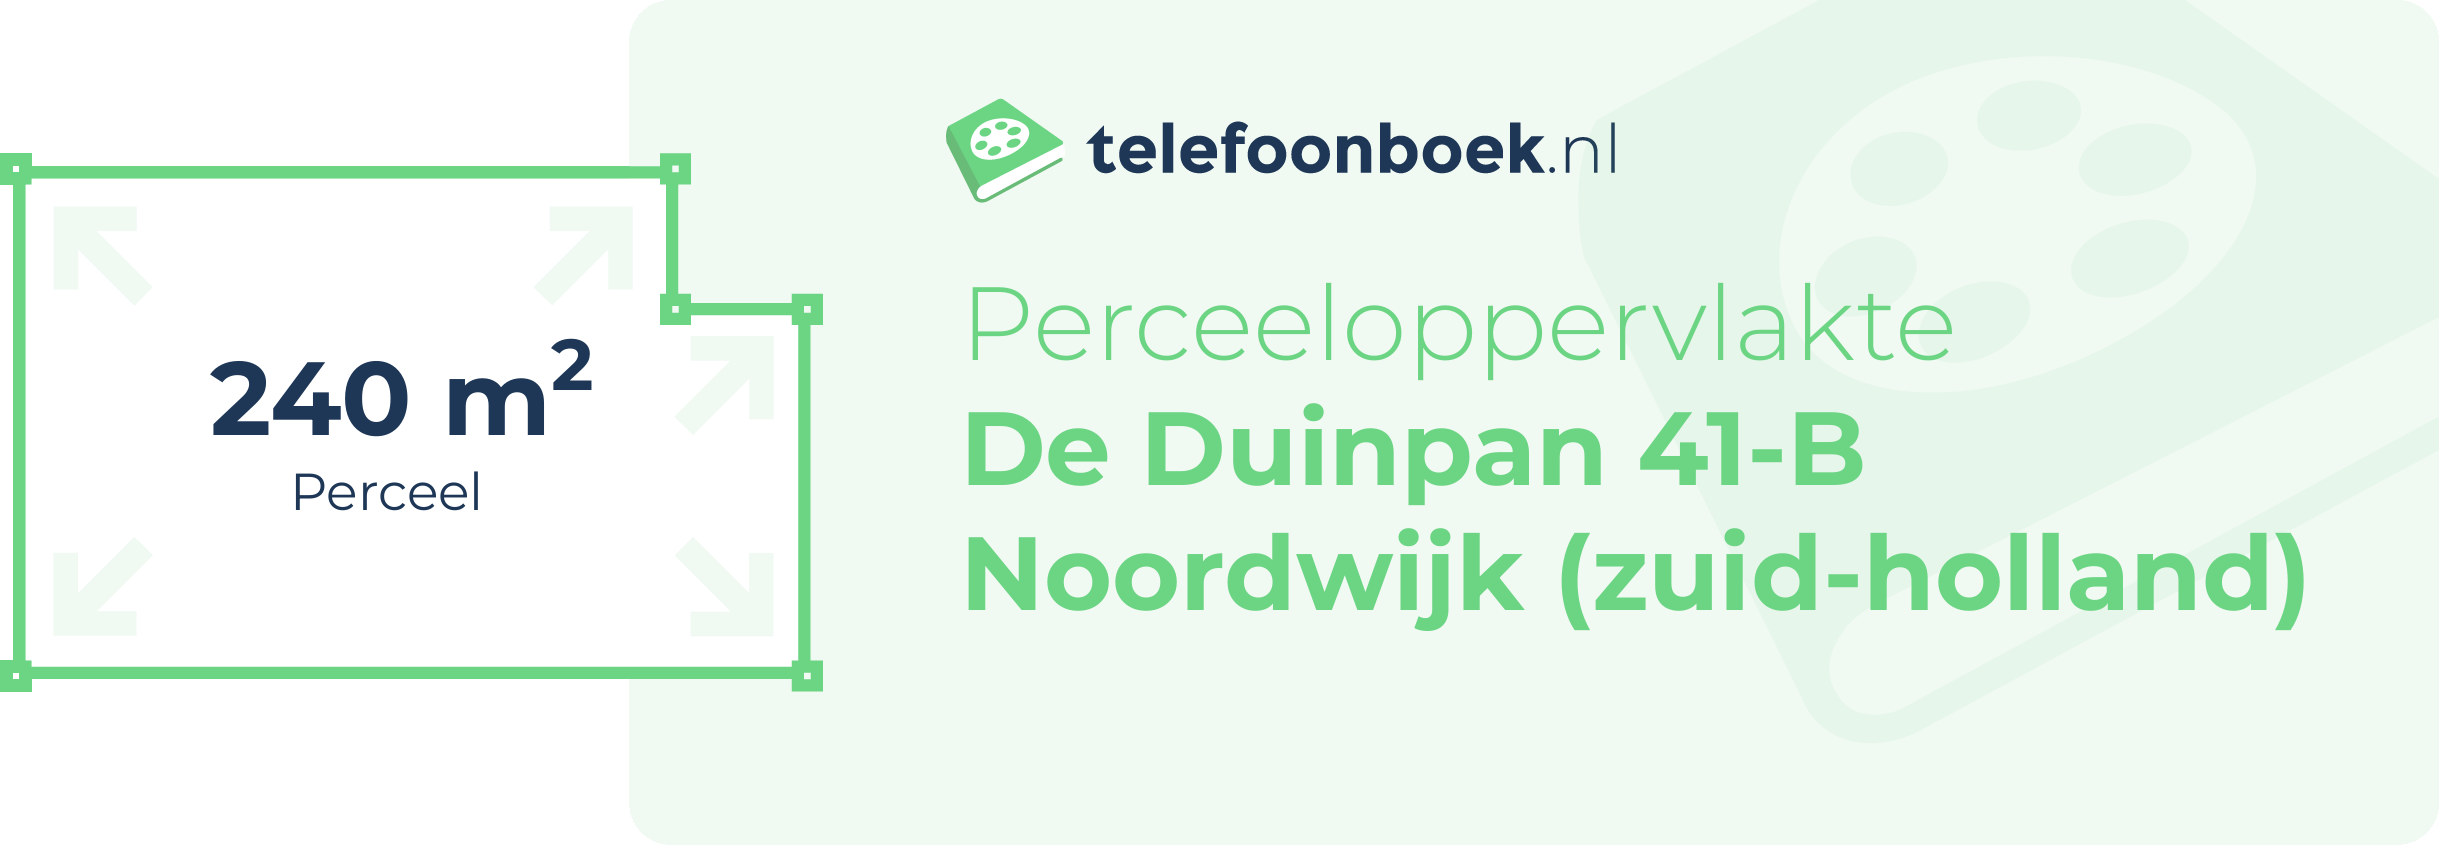 Perceeloppervlakte De Duinpan 41-B Noordwijk (Zuid-Holland)